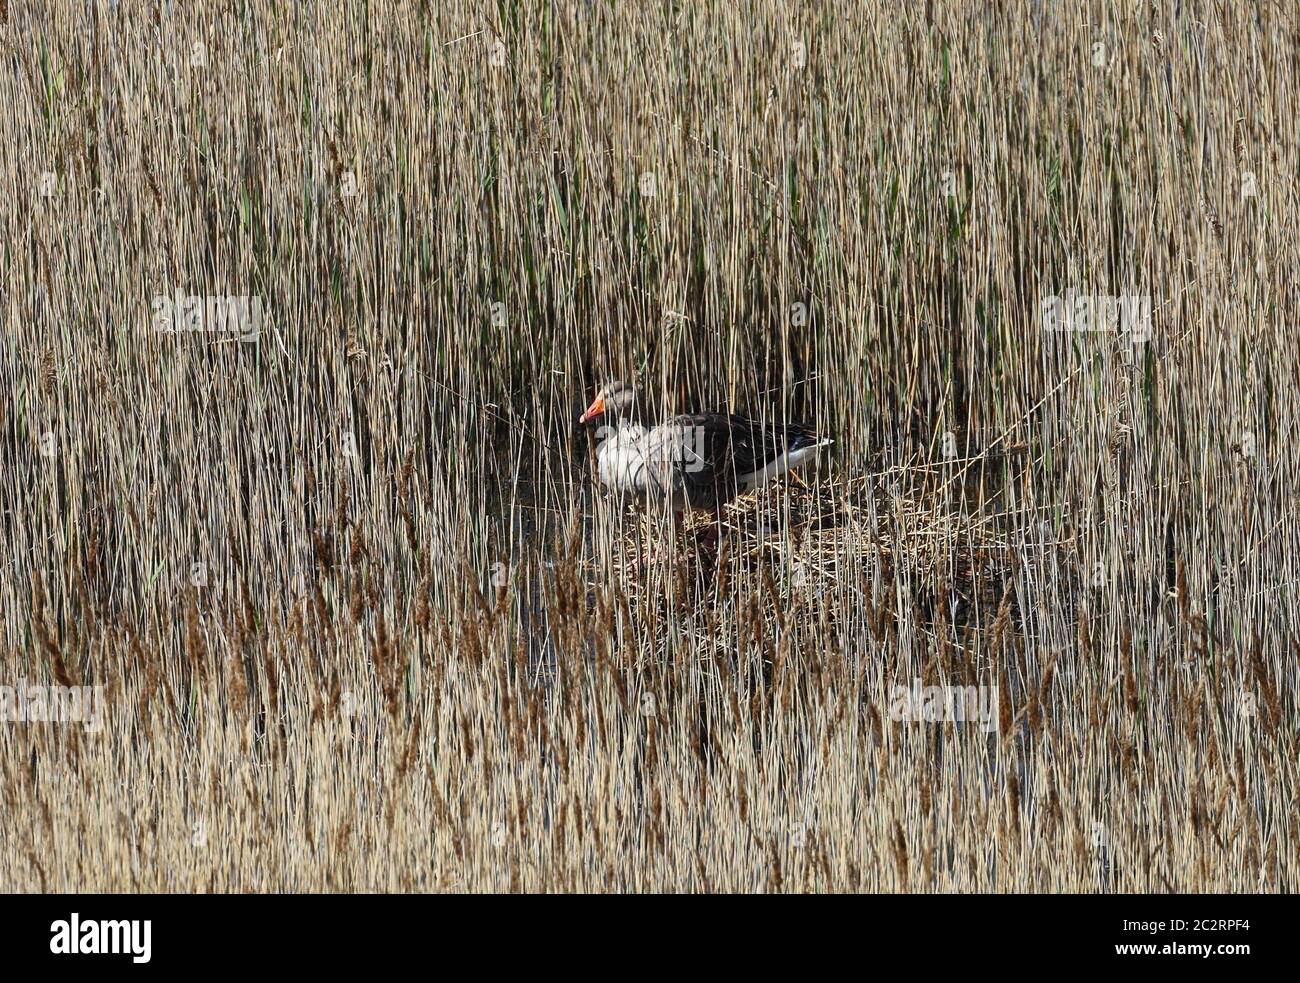 Greylag Goose Anser anser seduto su un nido in tra il letto di canna. Foto Stock